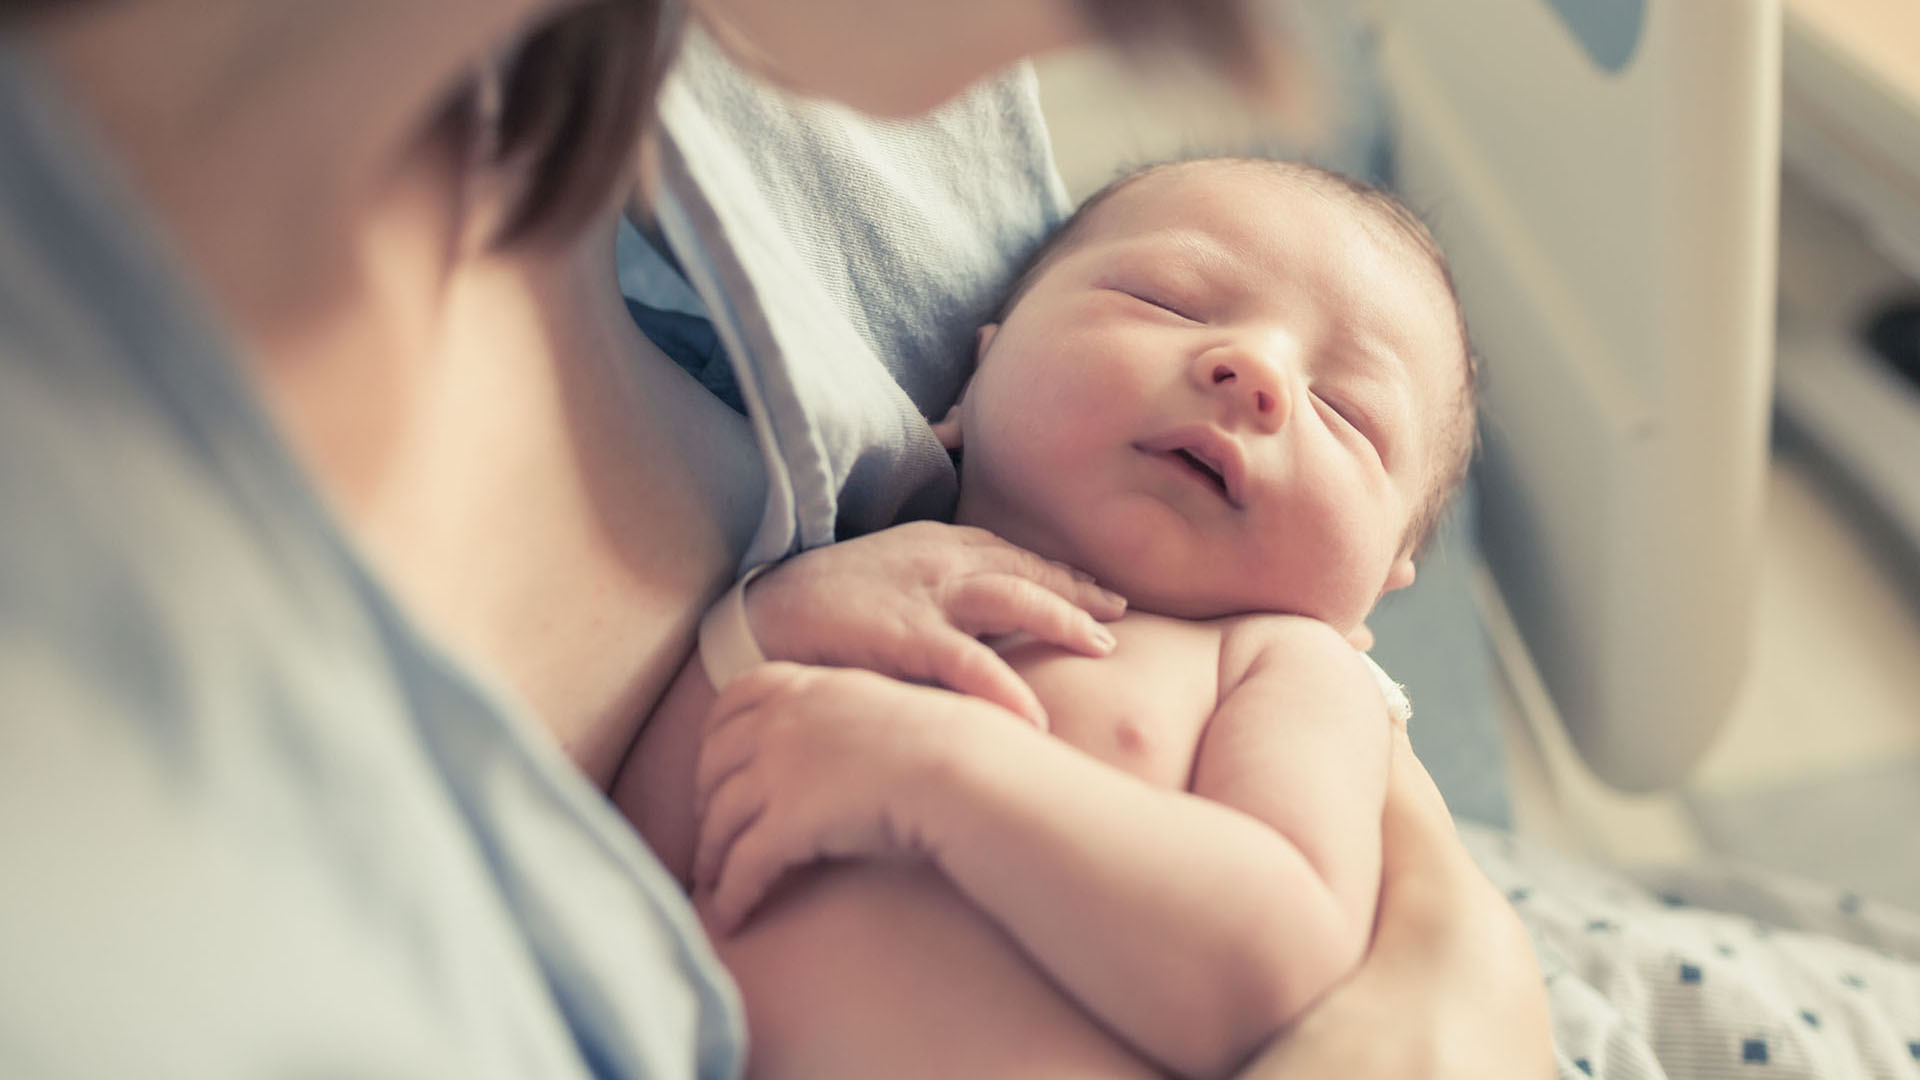 Hombres que toman alcohol al momento de buscar un hijo tienen tienen más de un tercio de probabilidades de que nazca con defectos de nacimiento (Shutterstock)